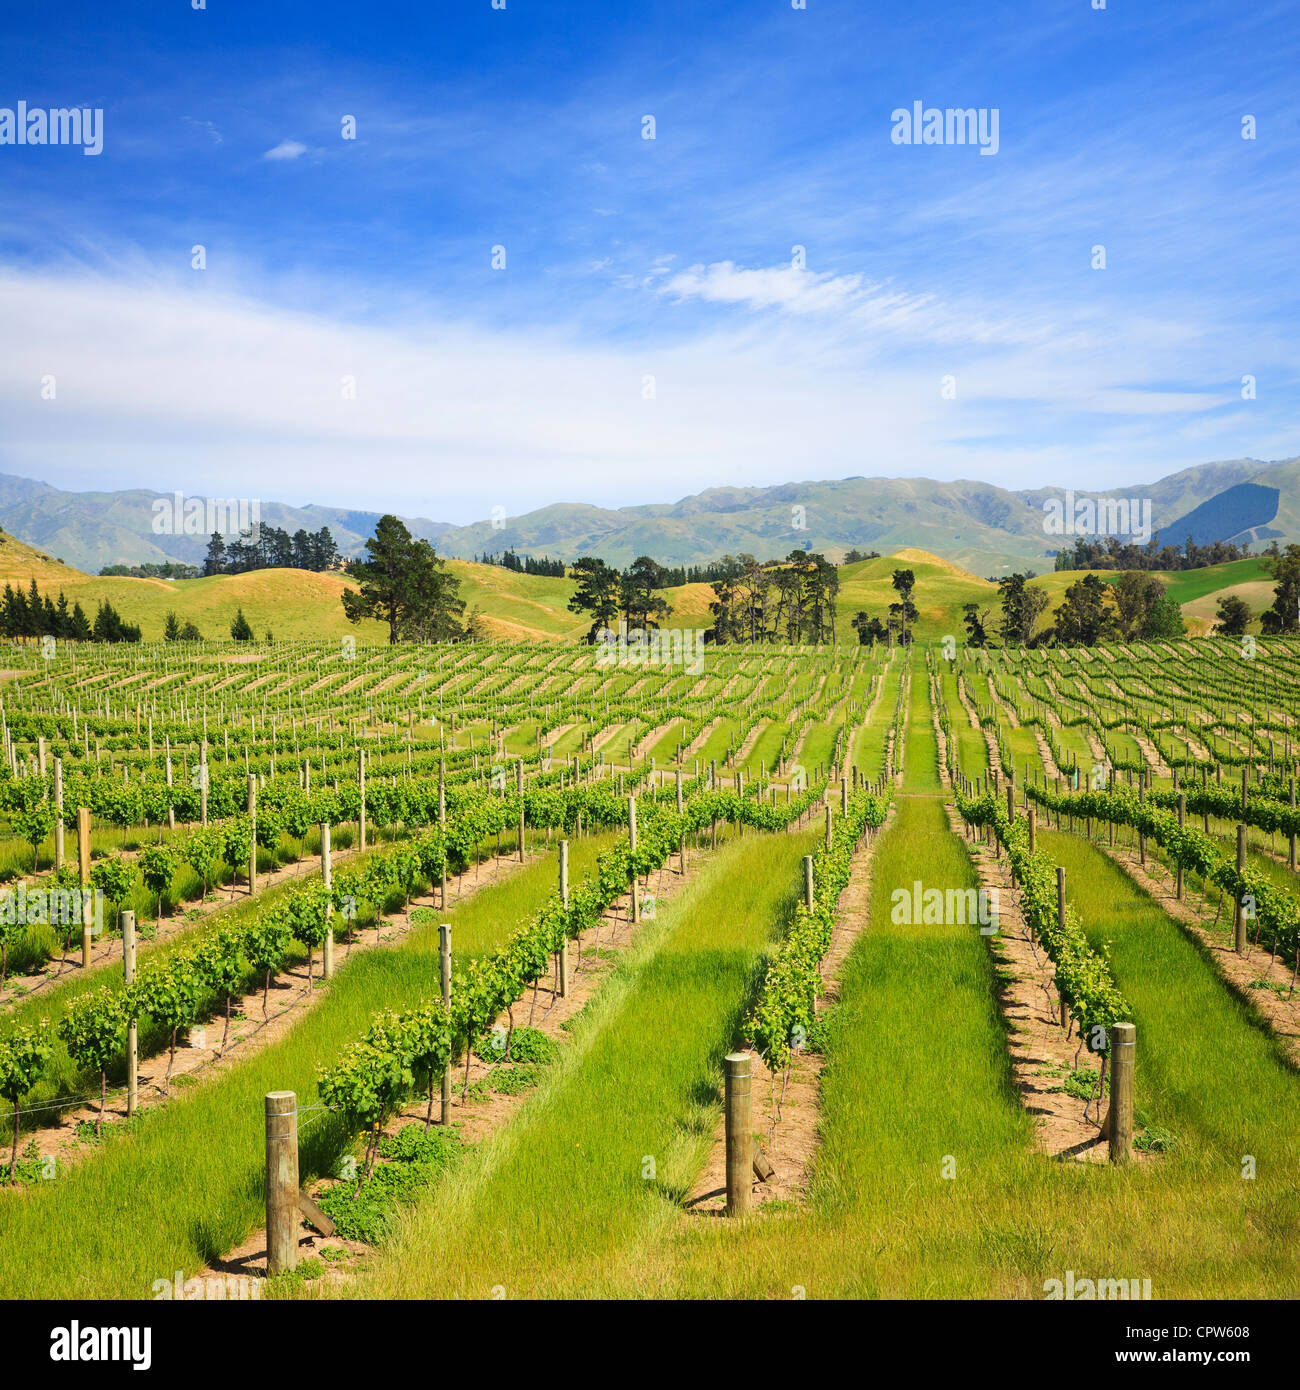 Junge Reben in der Region Marlborough, Neuseeland. Dieser Bereich wird als das beste in der Welt für Sauvignon Blanc bezeichnet. Stockfoto